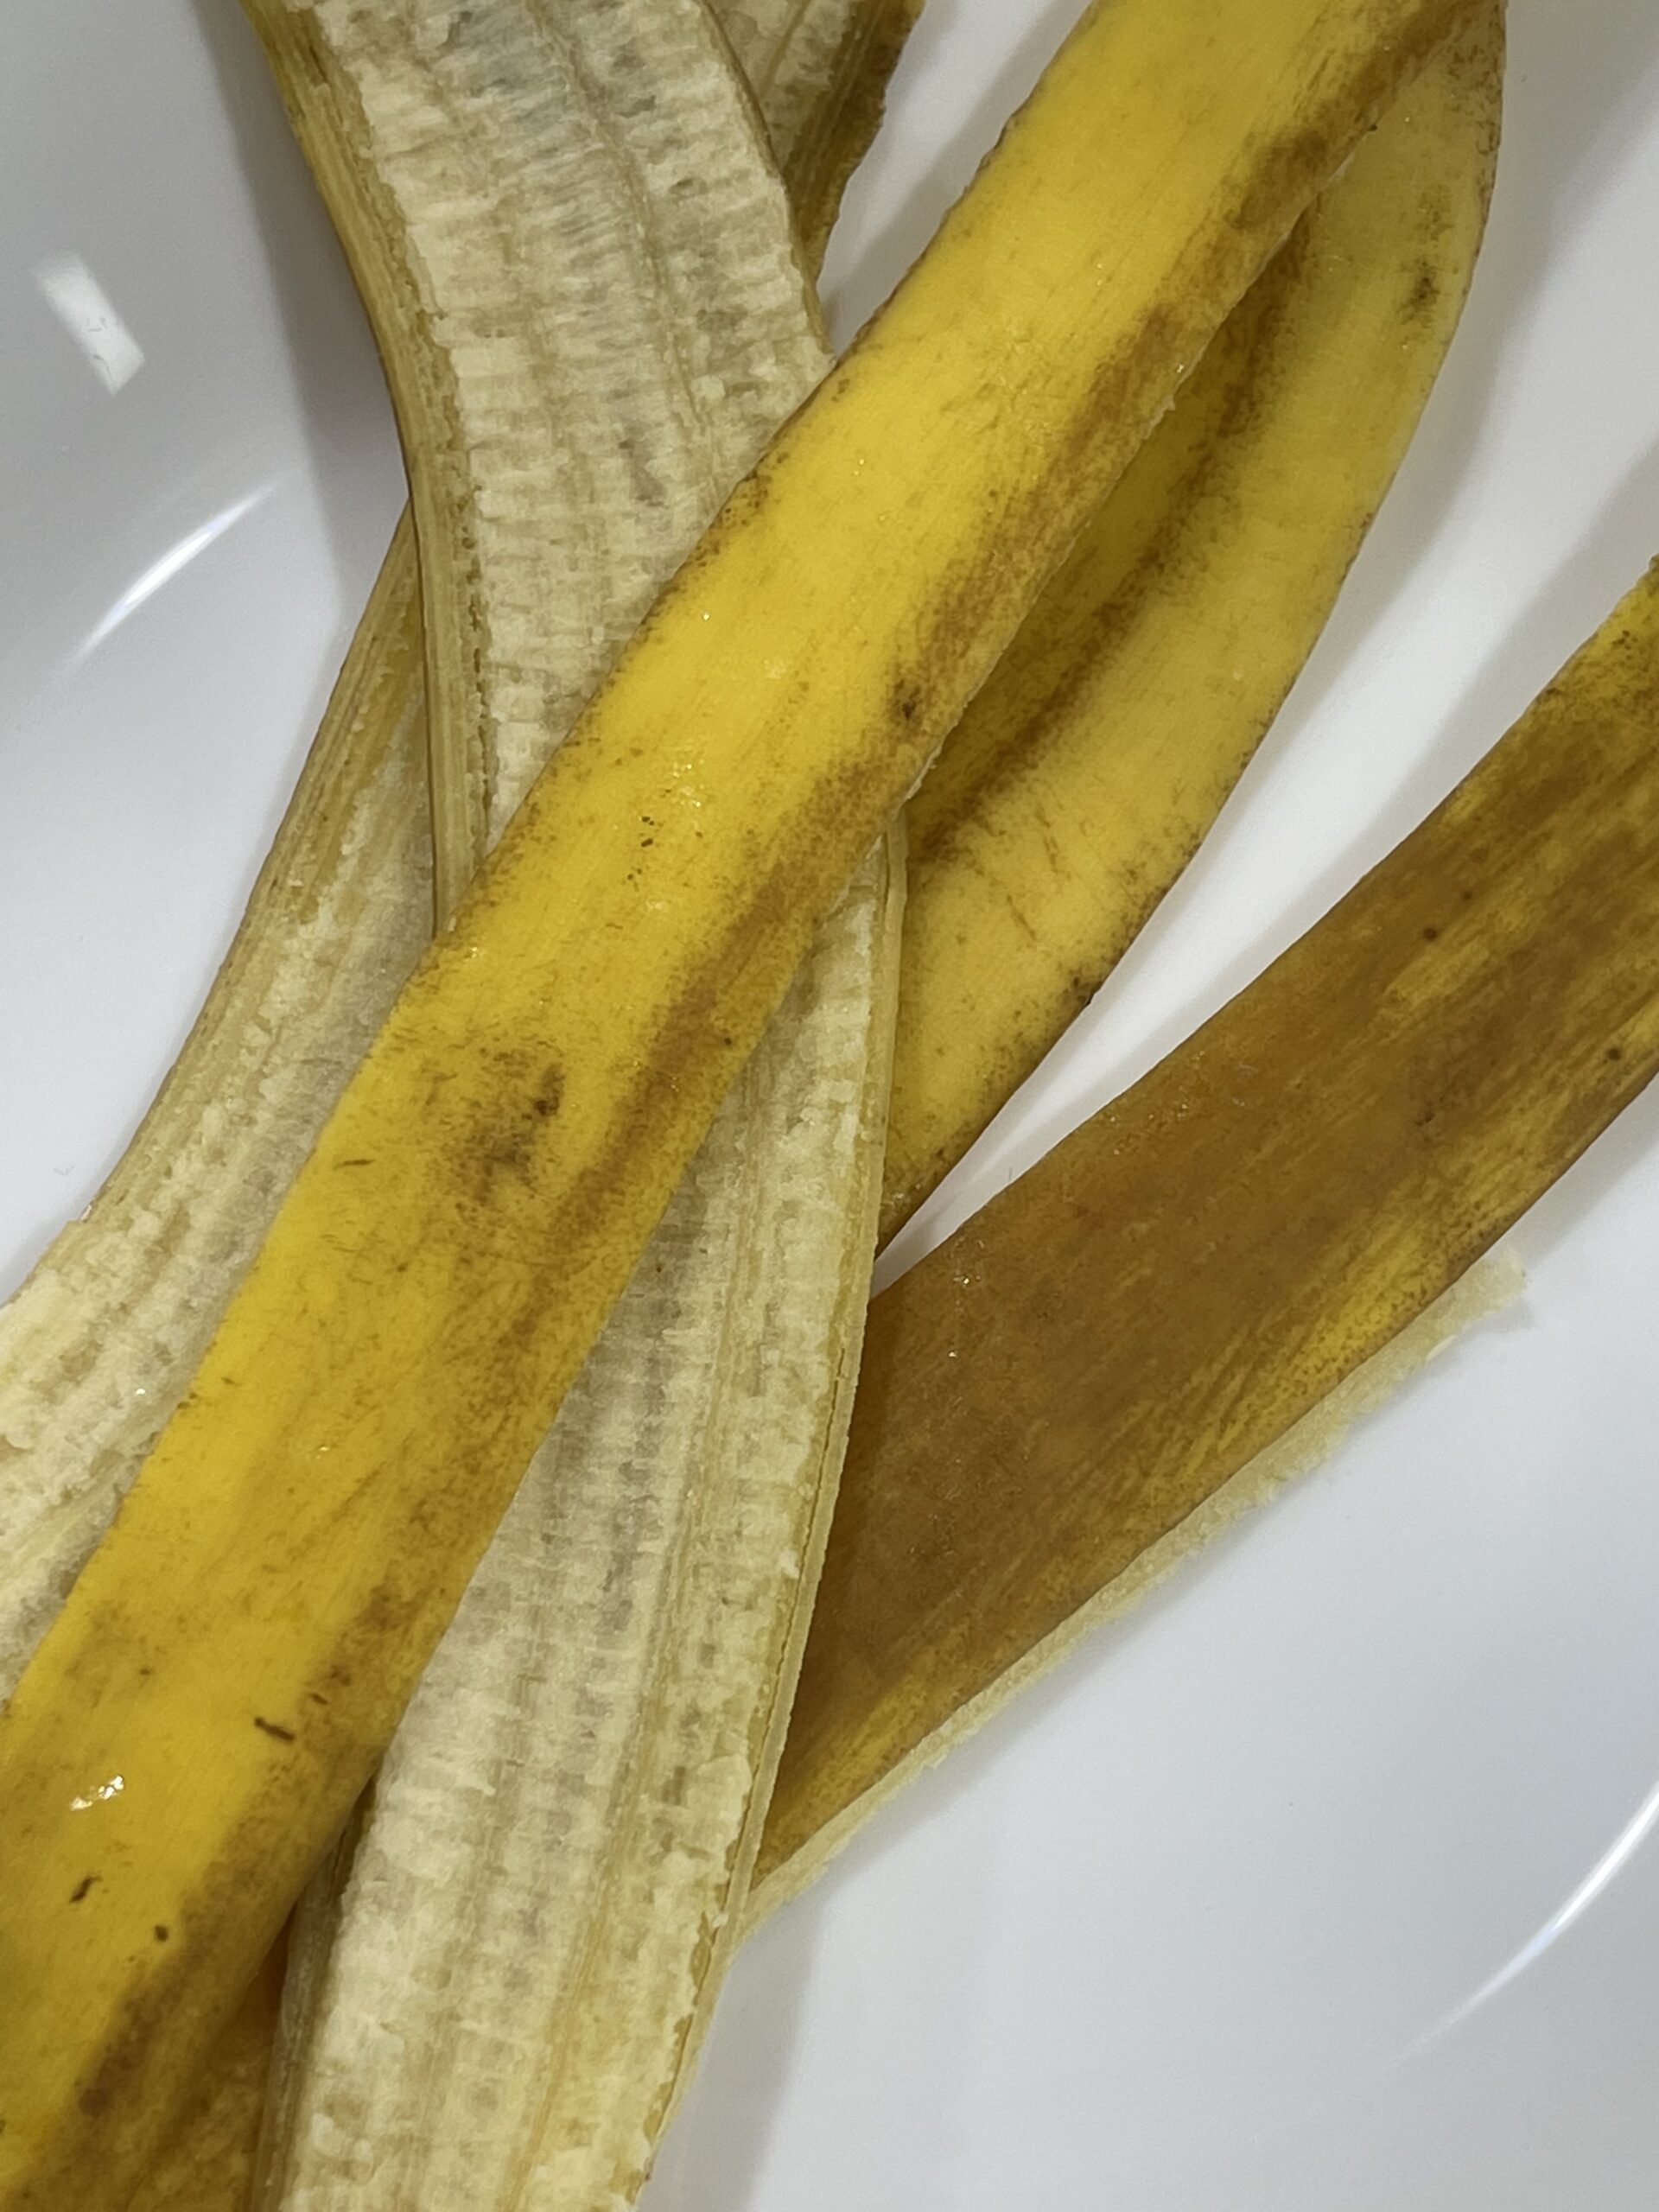 banana peels on a white plate